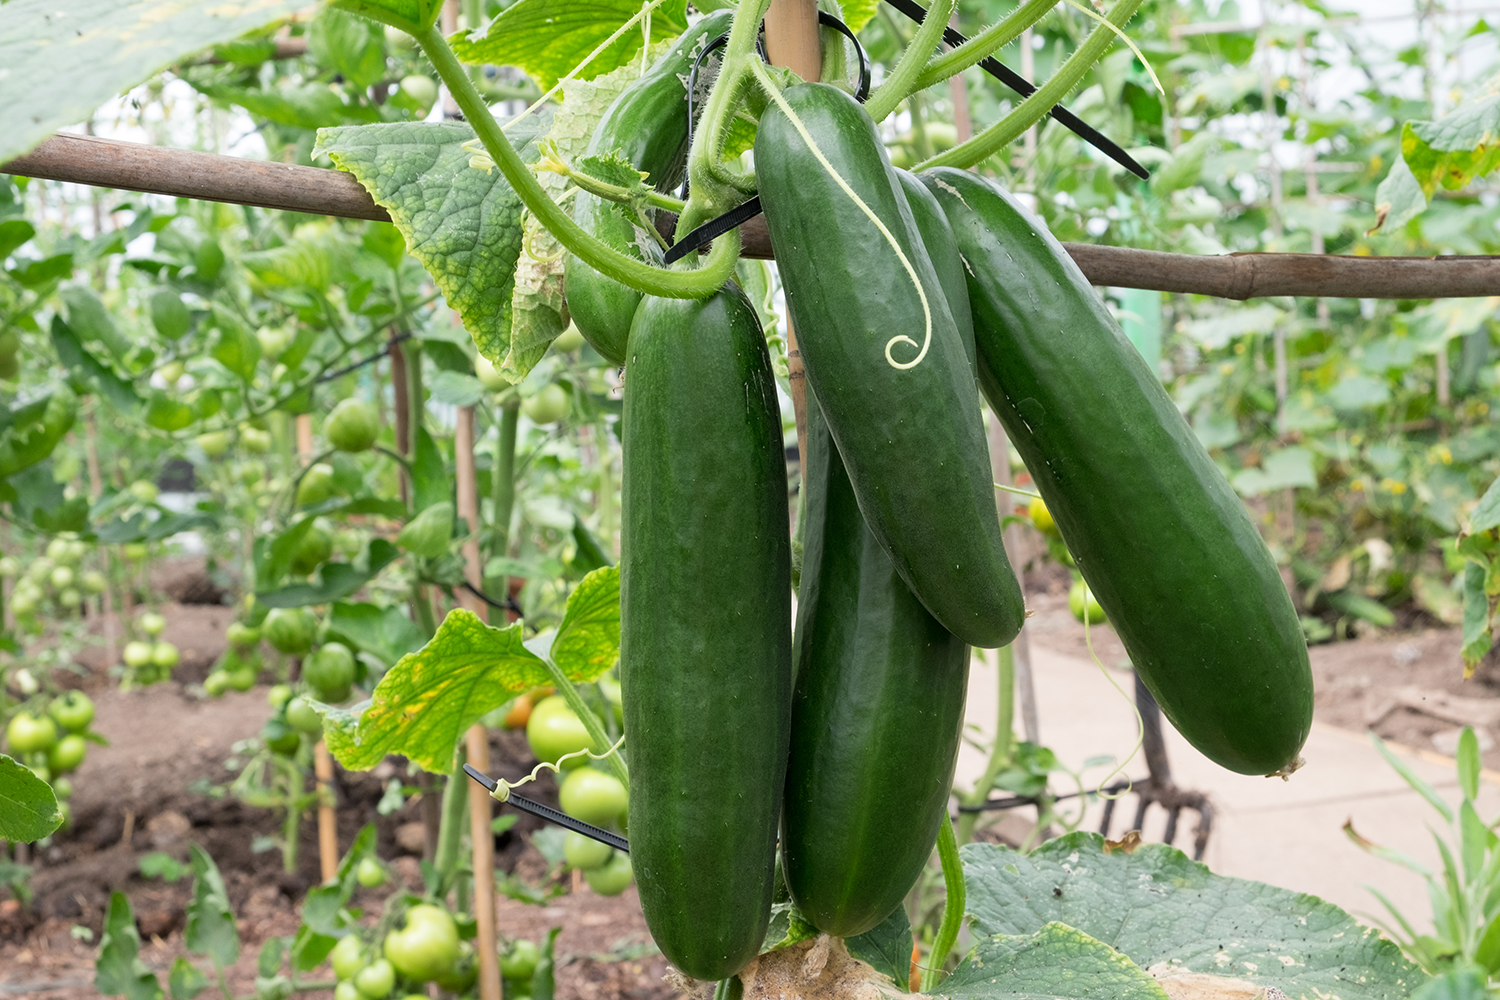 cucumber growing guide |tui| prepare, plant, nourish, harvest